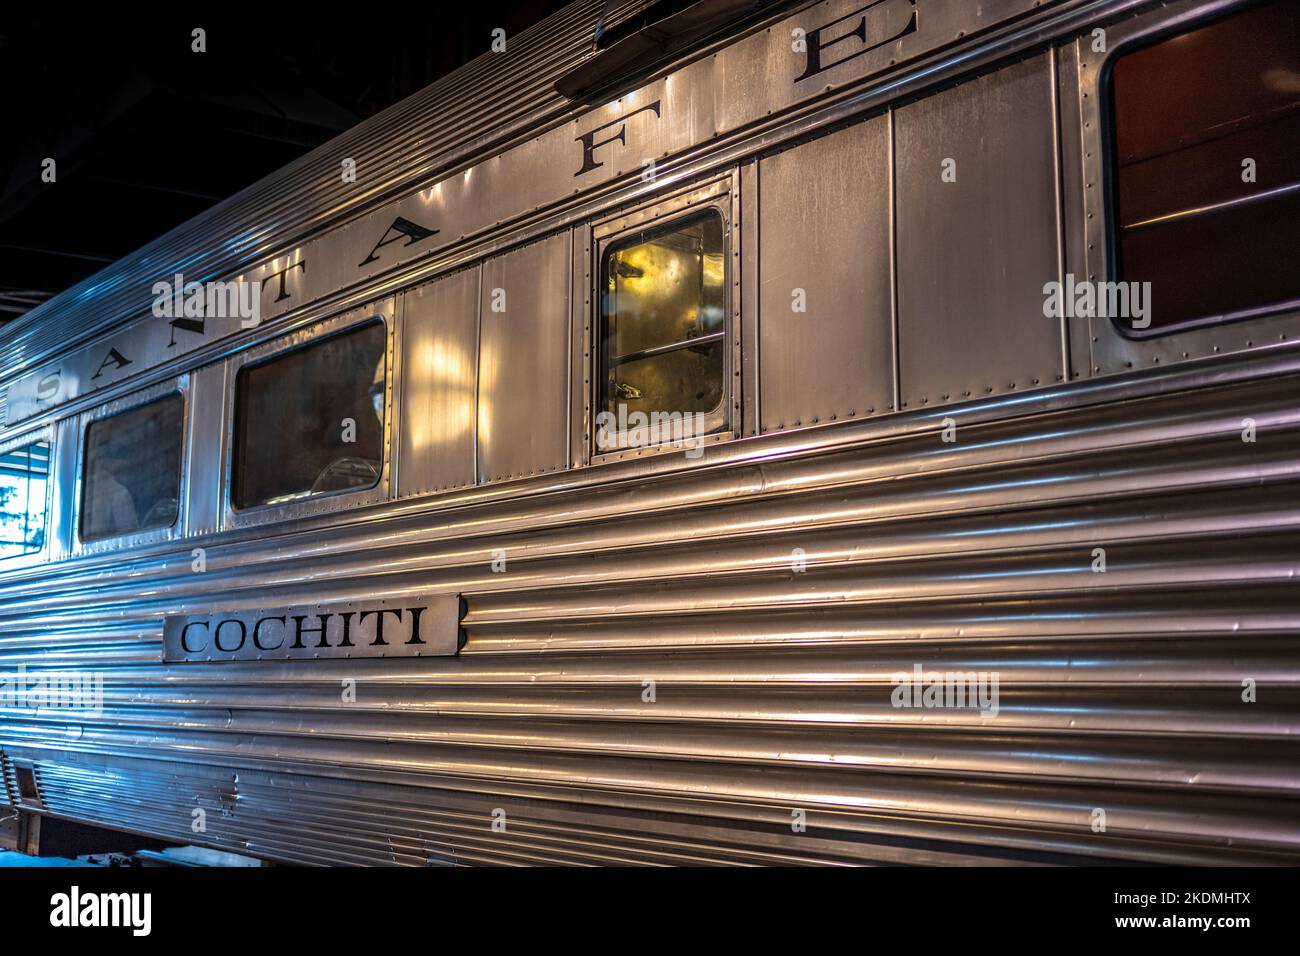 Le wagon « cochti » a été nommé d'après un pueblo indien de 1 000 ans au Nouveau-Mexique. Il a été utilisé comme voiture de luxe pour le chemin de fer AT & SF à partir de 1937 Banque D'Images